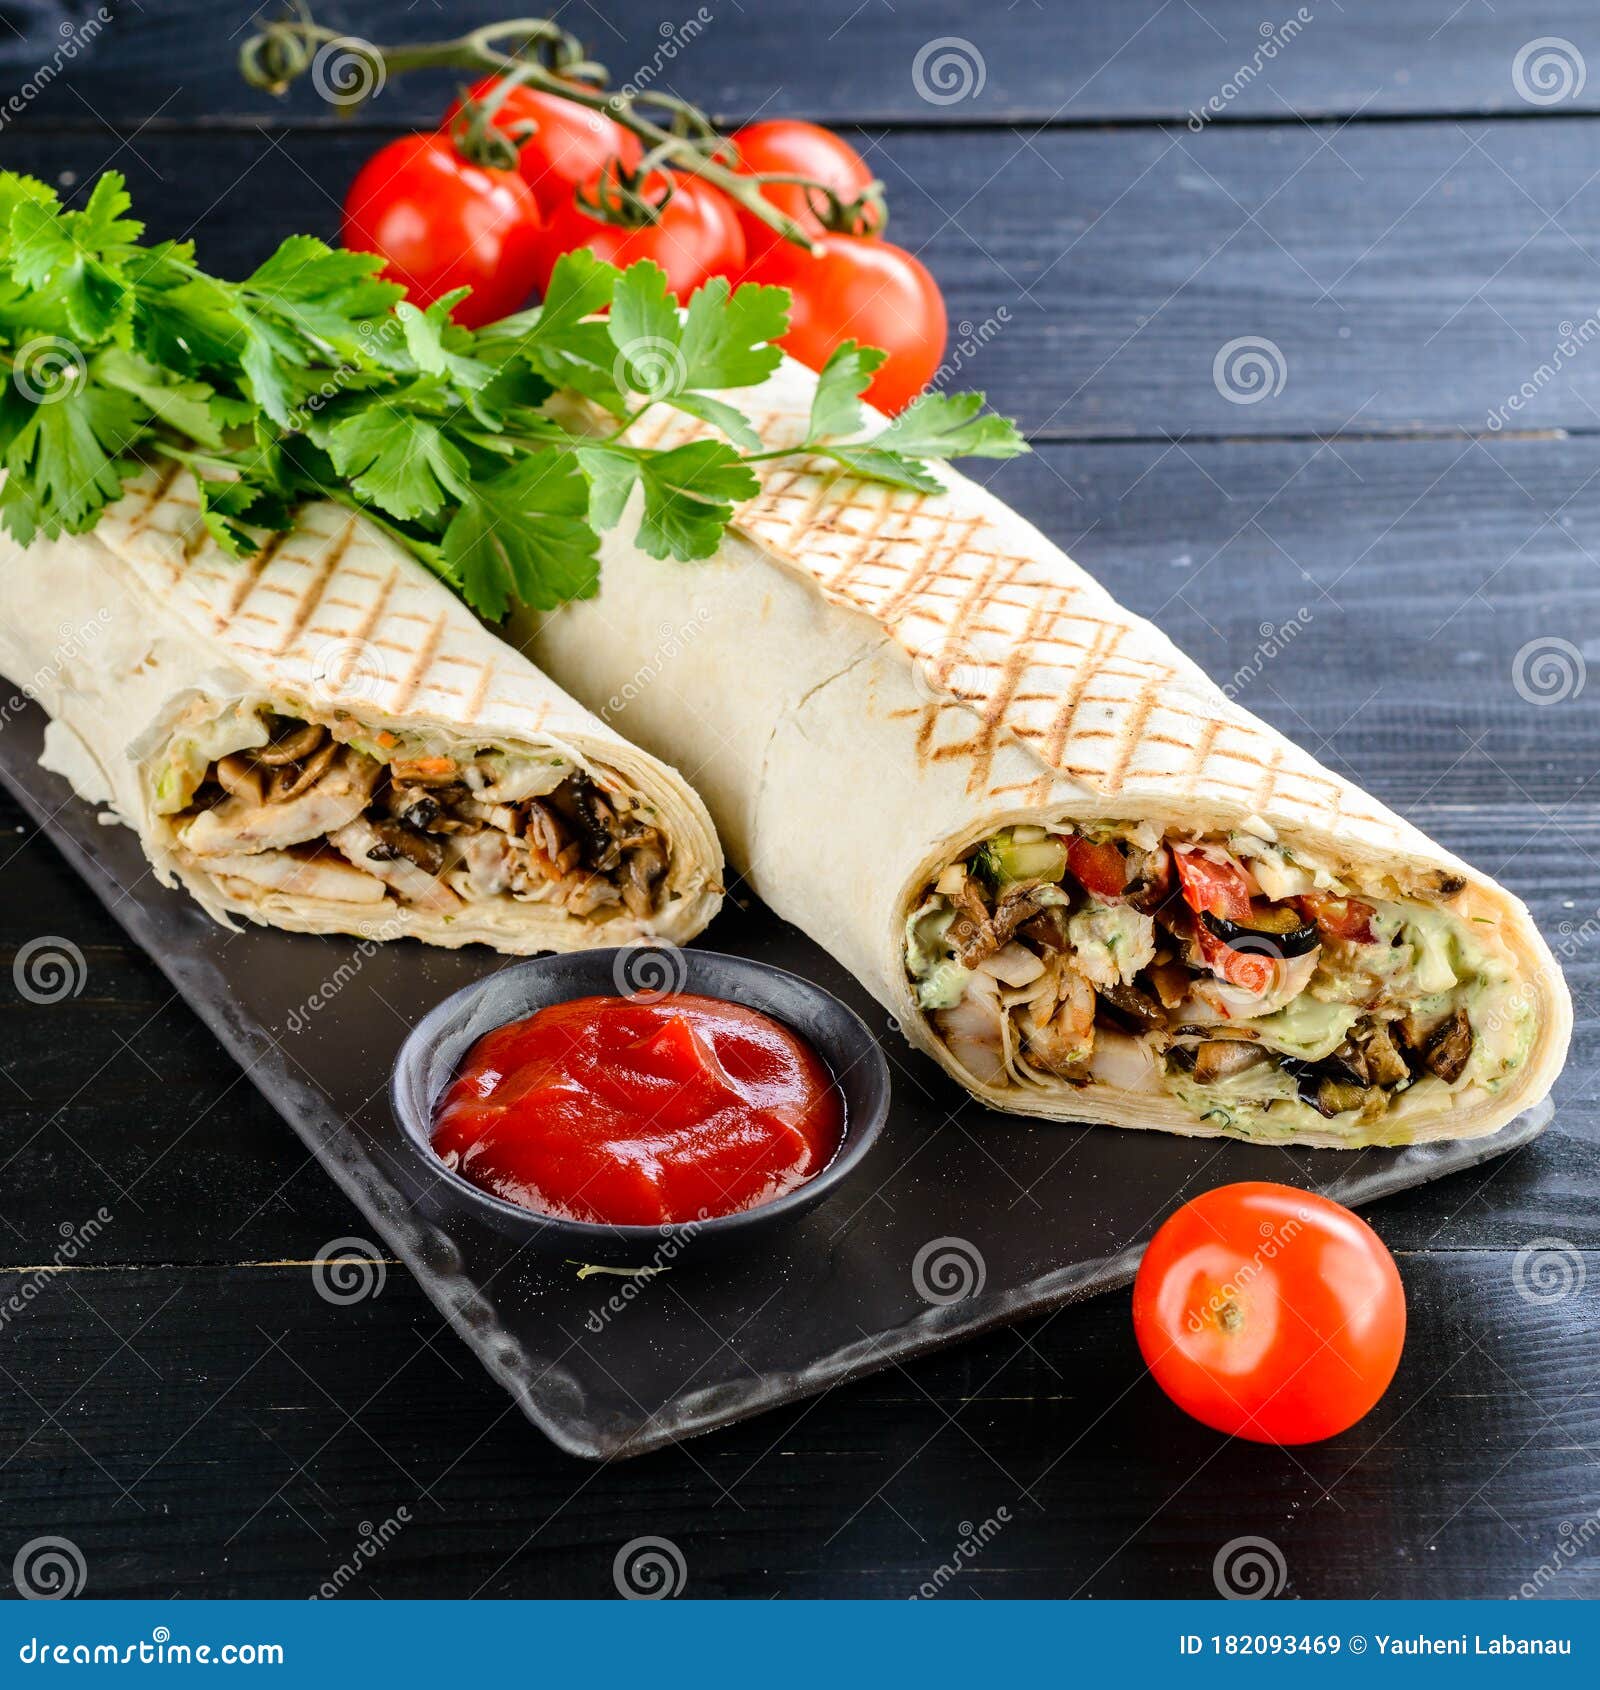 turkish-shawarma-chicken-lamb-pita-bread-classic-tortilla-wrap-grilled-182093469.jpg